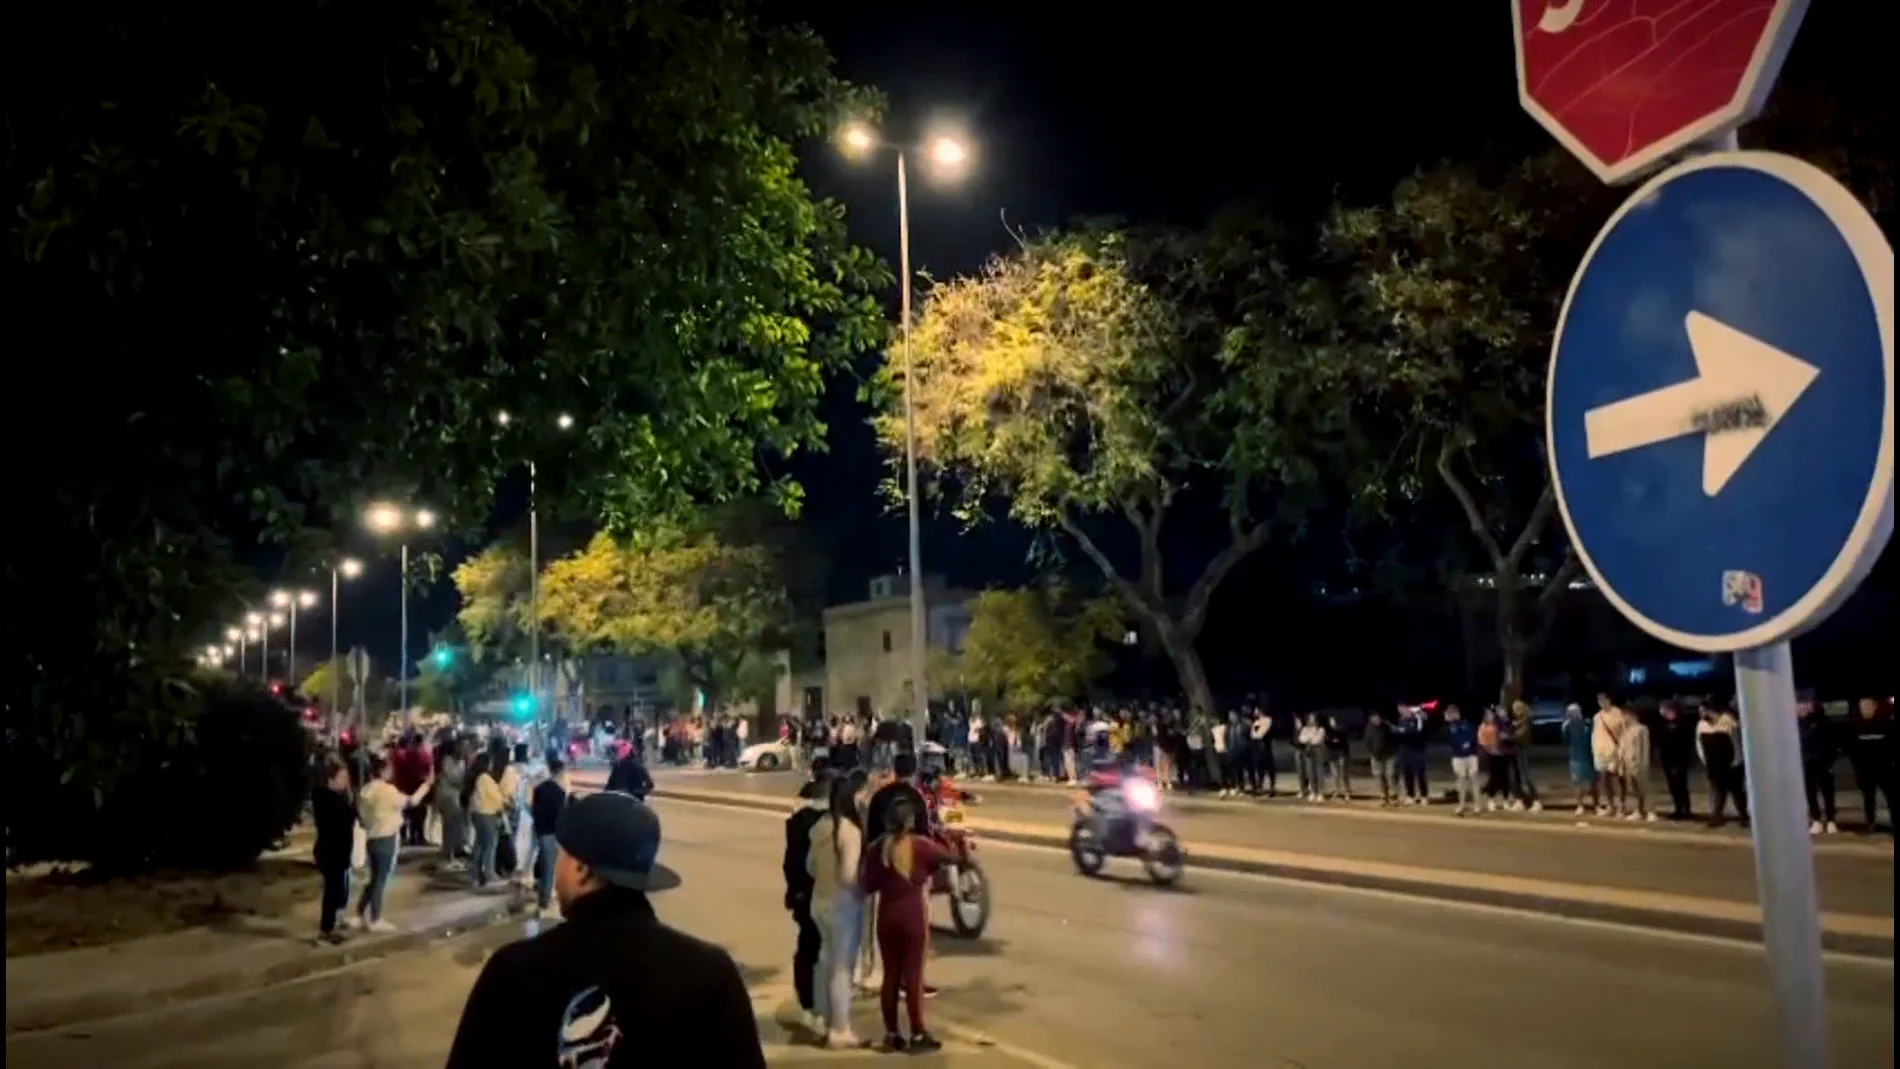 Denuncian carreras ilegales de motos en una calle principal de Jerez: "Lo que estamos pasando no es normal"